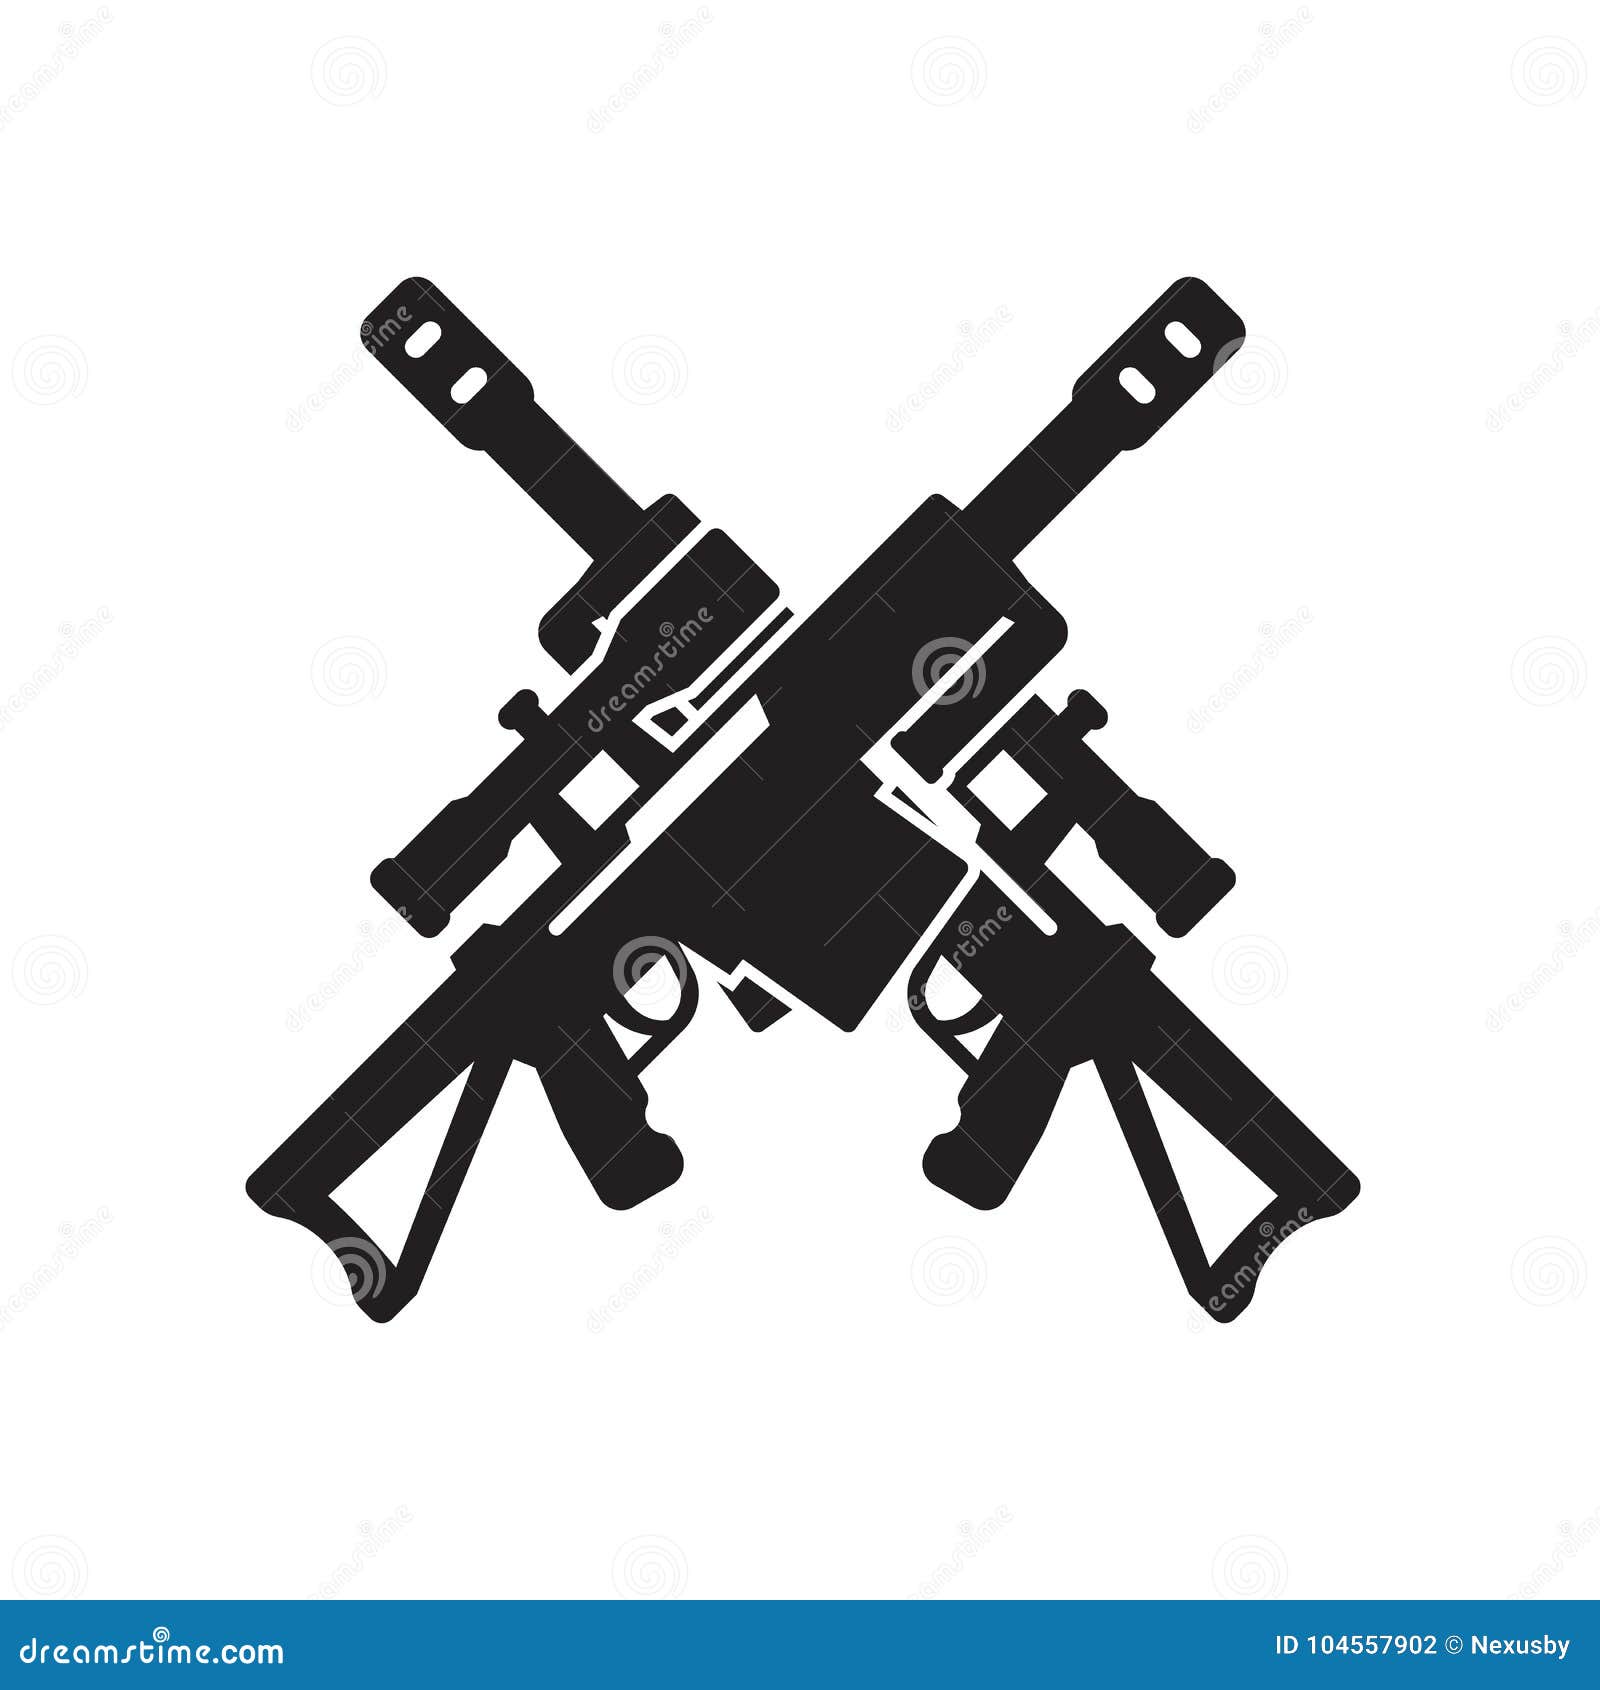 https://thumbs.dreamstime.com/z/sniper-rifle-icon-two-crossed-guns-white-sniper-rifle-icon-two-crossed-guns-white-eps-file-easy-to-edit-104557902.jpg